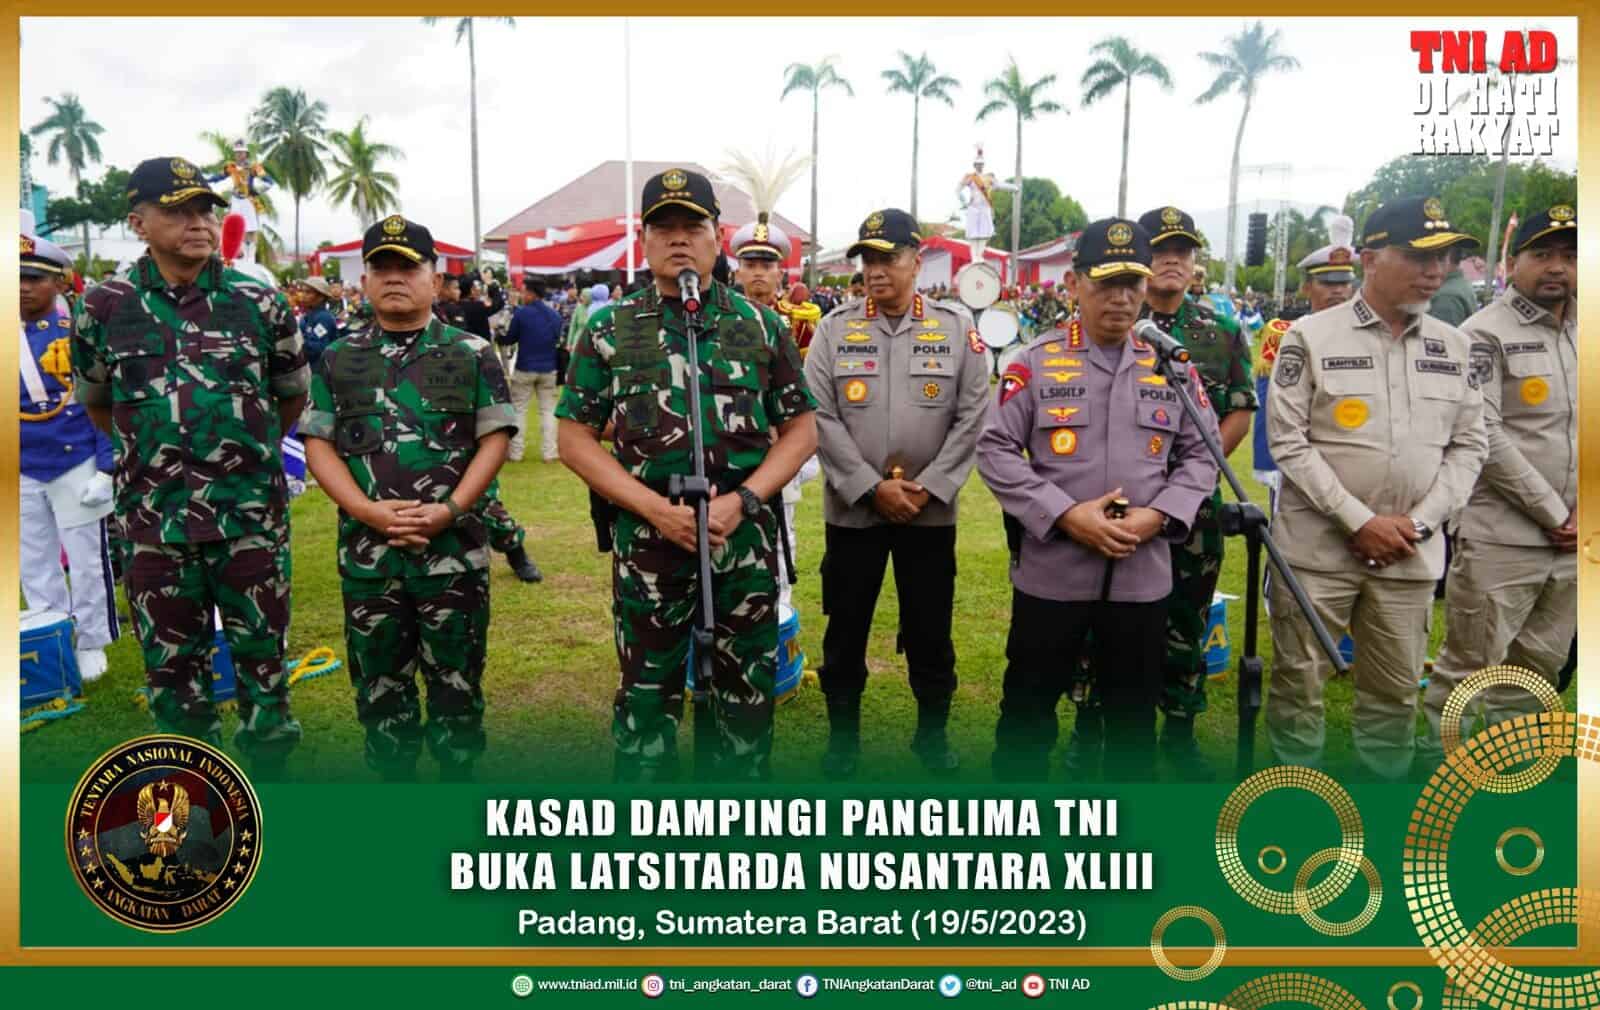 Kasad Dampingi Panglima TNI Buka Latsitarda Nusantara XLIII